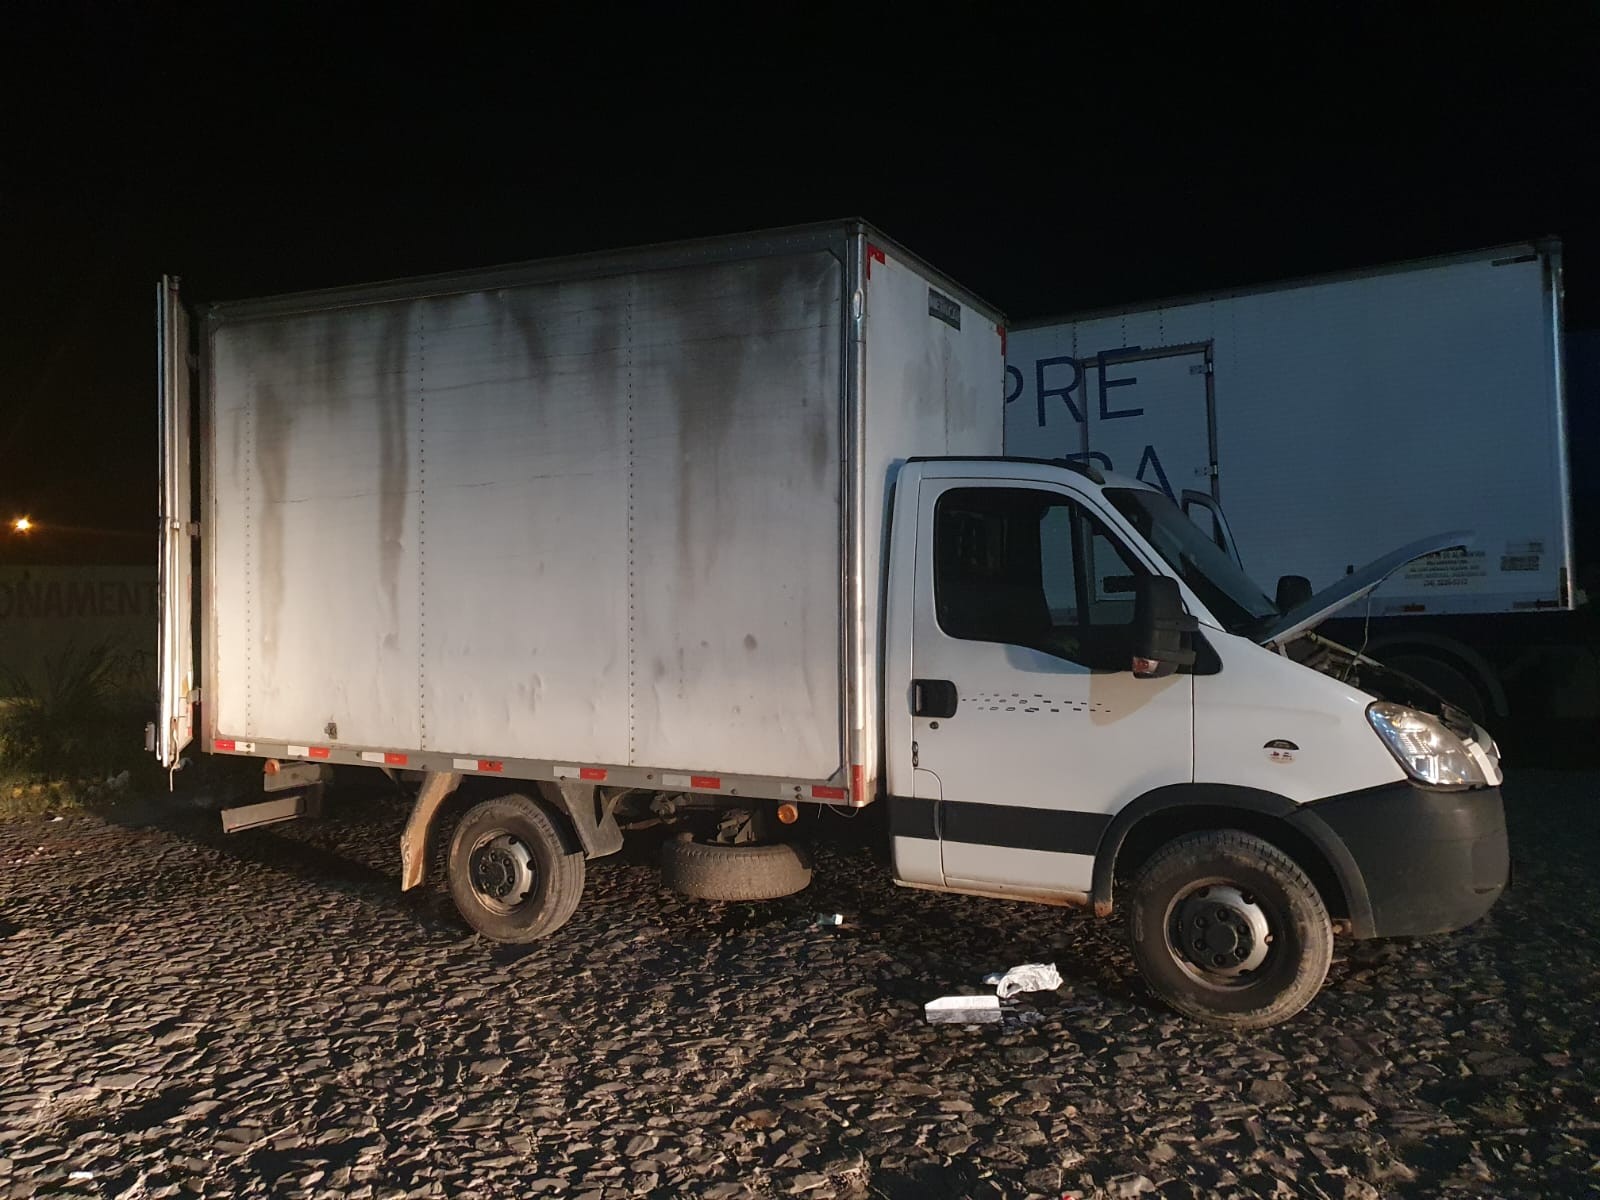 Homens são presos em Sete Lagoas suspeitos de roubar caminhão